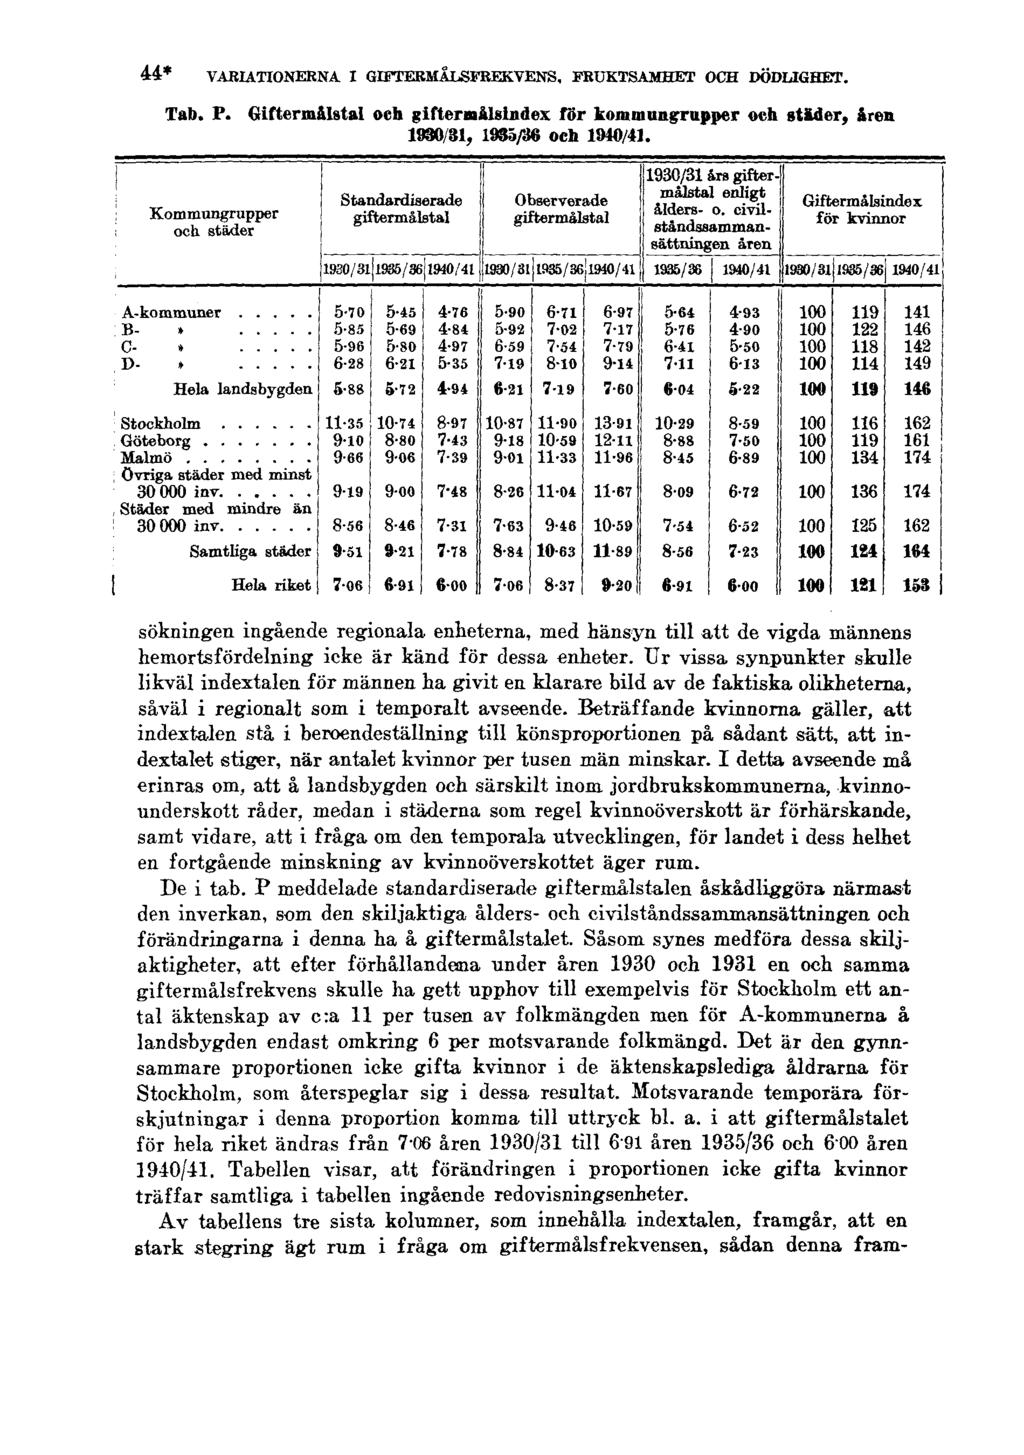 44* VARIATIONERNA I GIFTERMÅLSFREKVENS, FRUKTSAMHET OCH DÖDLIGHET. Tab. P. Giftermålstal och giftermålsindex för kommungrupper och städer, åren 1930/31, 1935/36 och 1940/41.